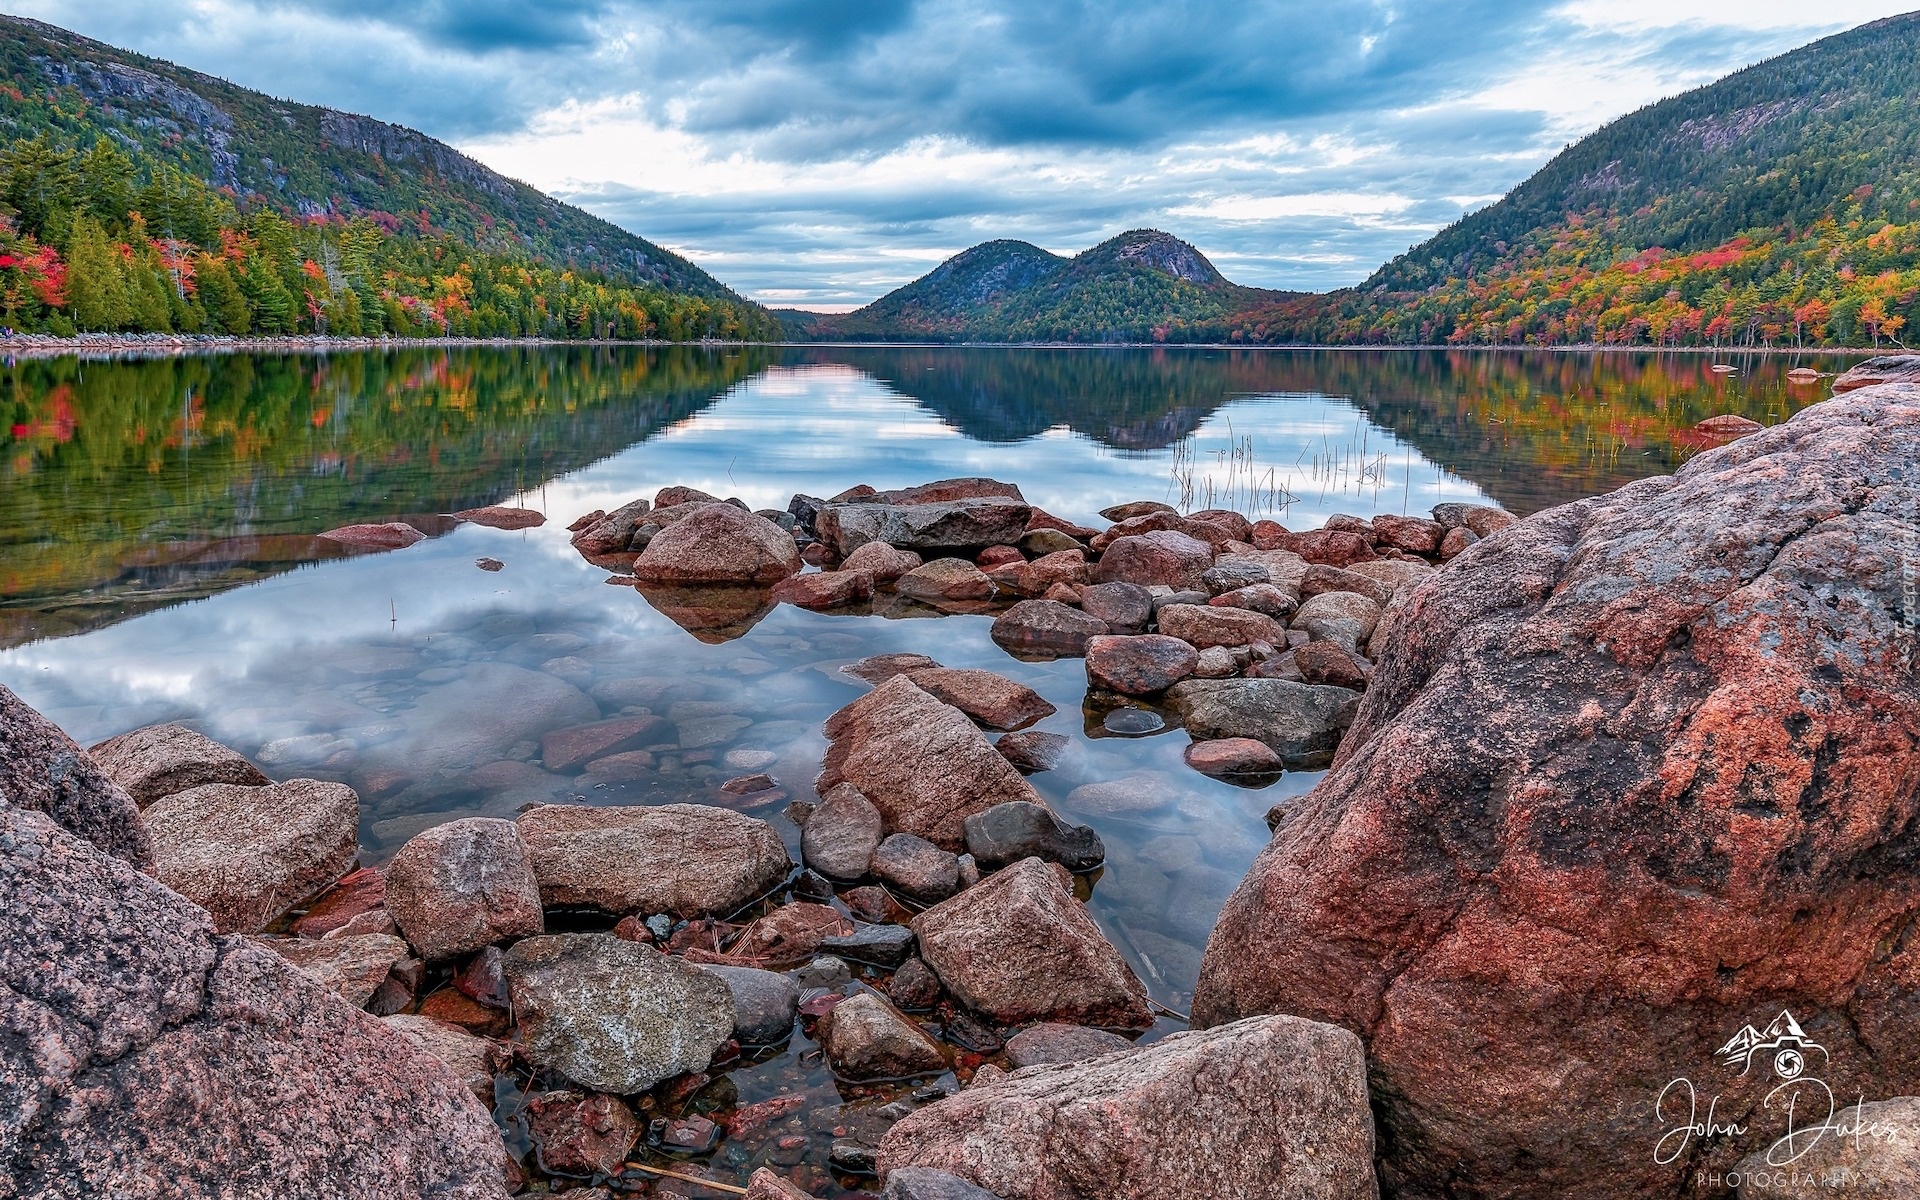 Stany Zjednoczone, Stan Maine, Park Narodowy Acadia, Jezioro Jordan Pond, Kamienie, Skały, Góry, Bubble Mountains